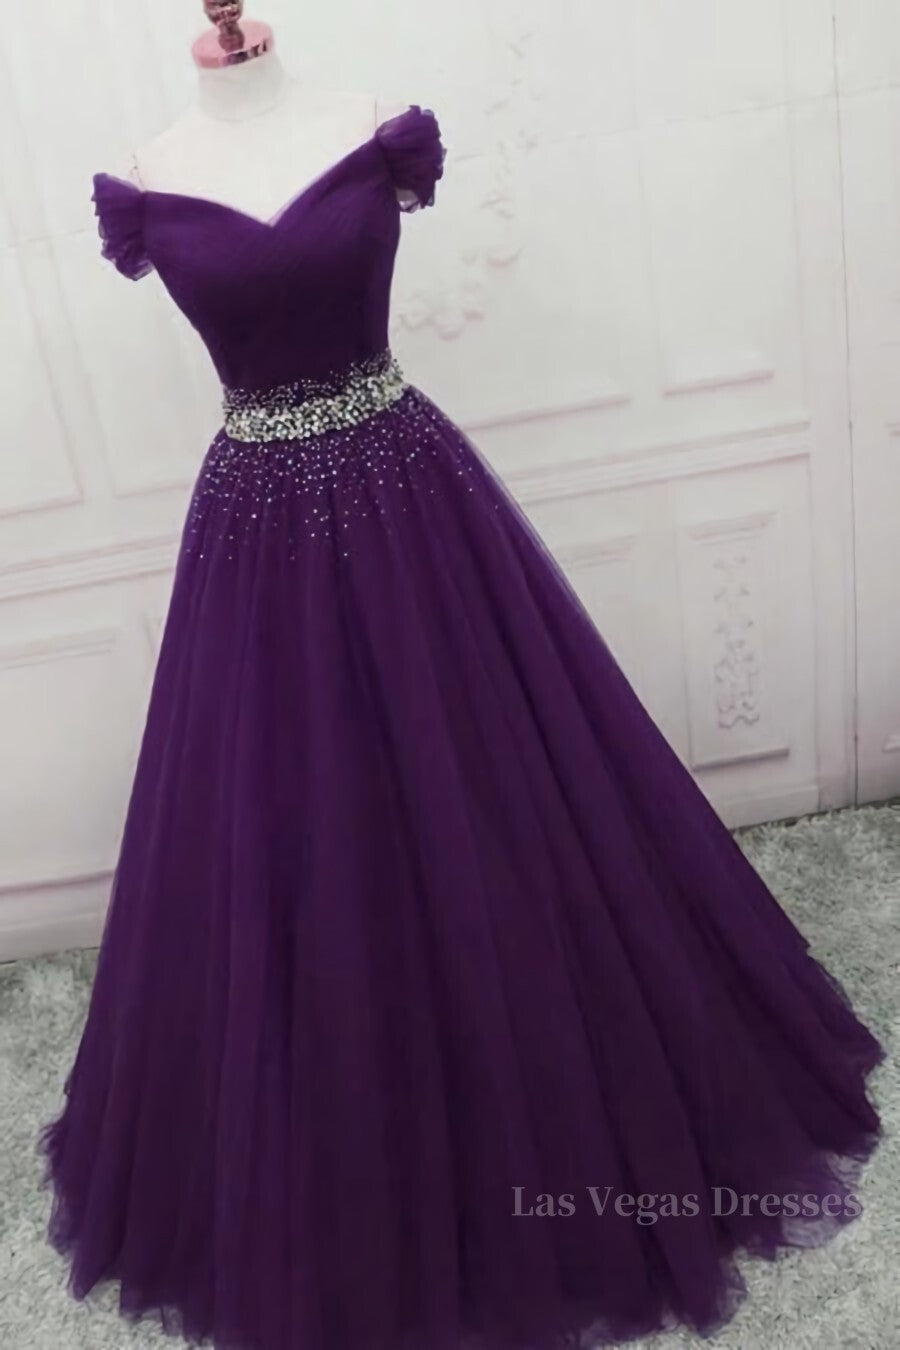 Charming Sequins Off Shoulder Dark Purple Long Prom Dress, Off the Shoulder Dark Purple Formal Evening Dress